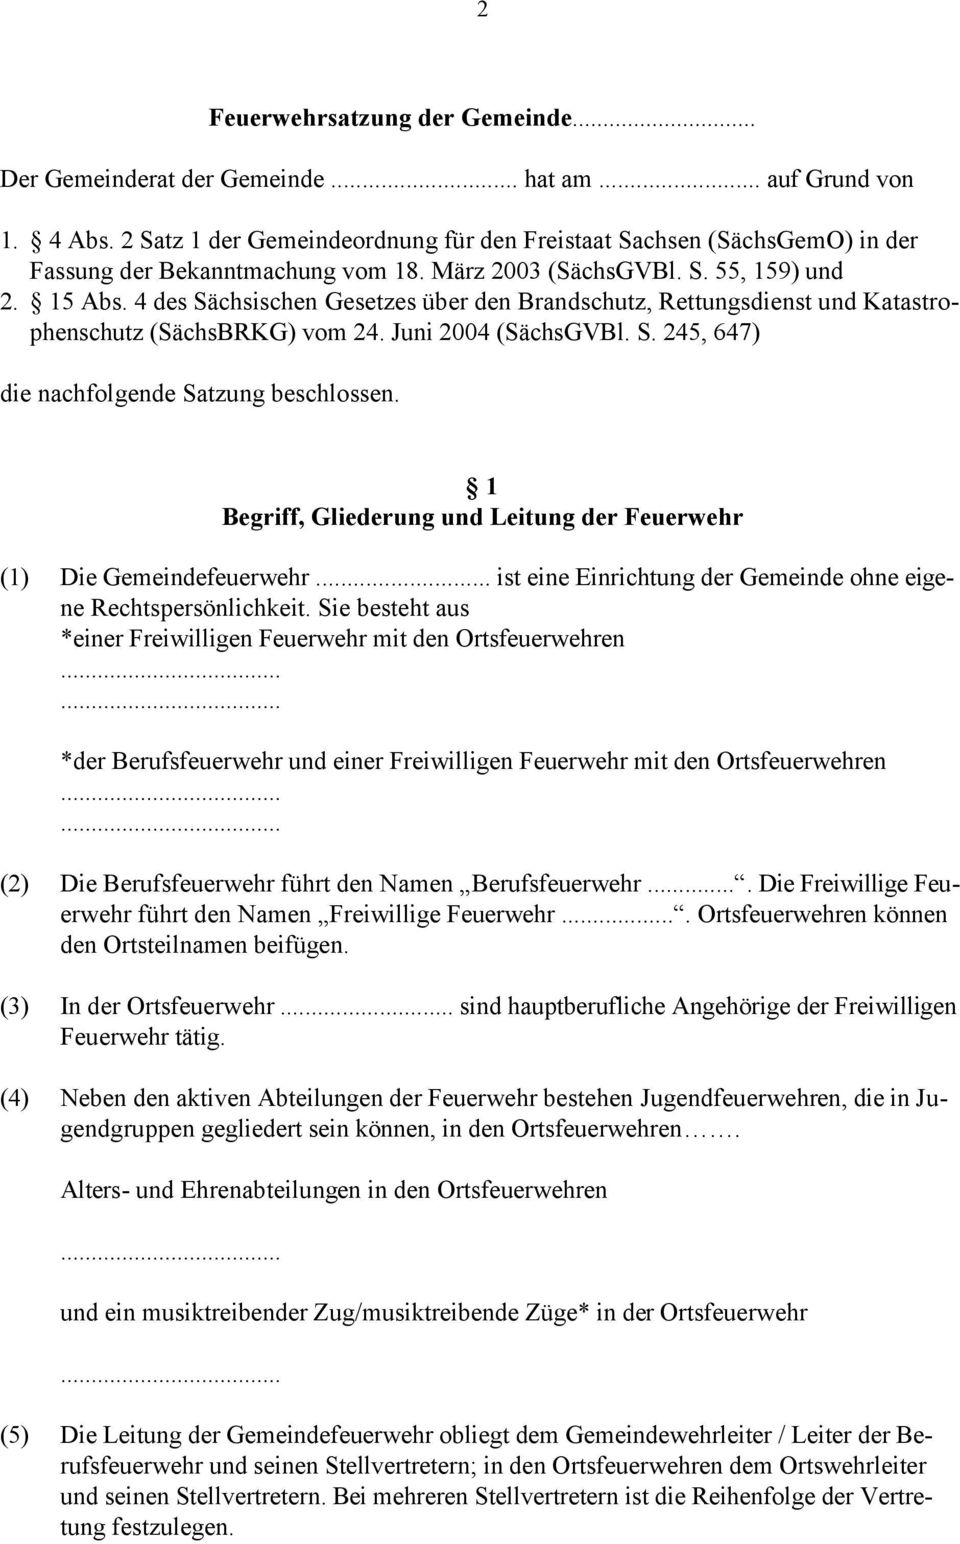 4 des Sächsischen Gesetzes über den Brandschutz, Rettungsdienst und Katastrophenschutz (SächsBRKG) vom 24. Juni 2004 (SächsGVBl. S. 245, 647) die nachfolgende Satzung beschlossen.